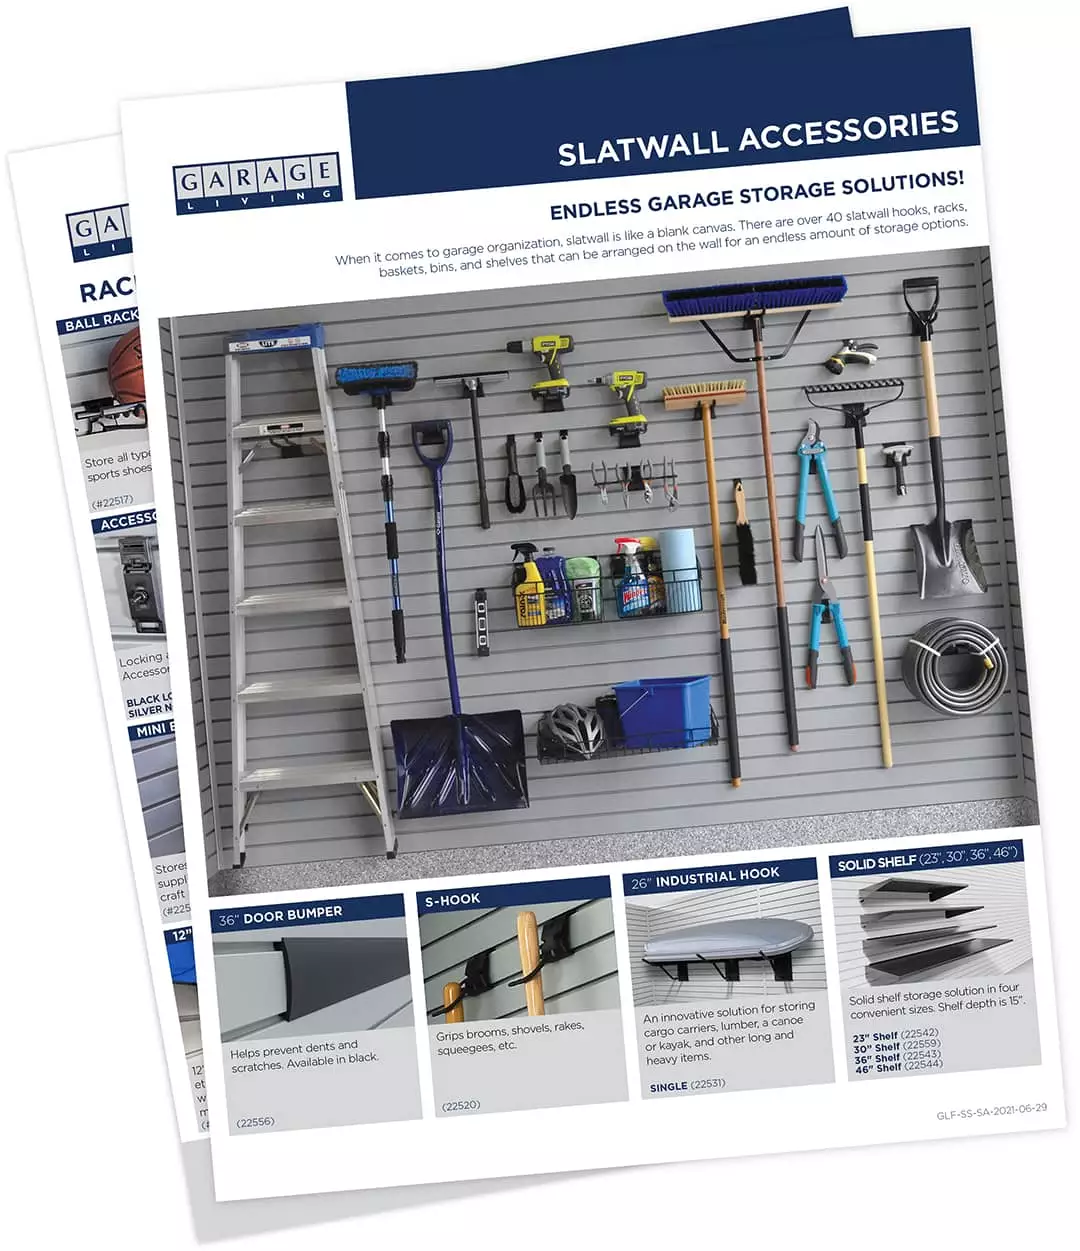 xslatwall_accessories-20210629.jpg.pagespeed.ic.L8IPEr025s-1